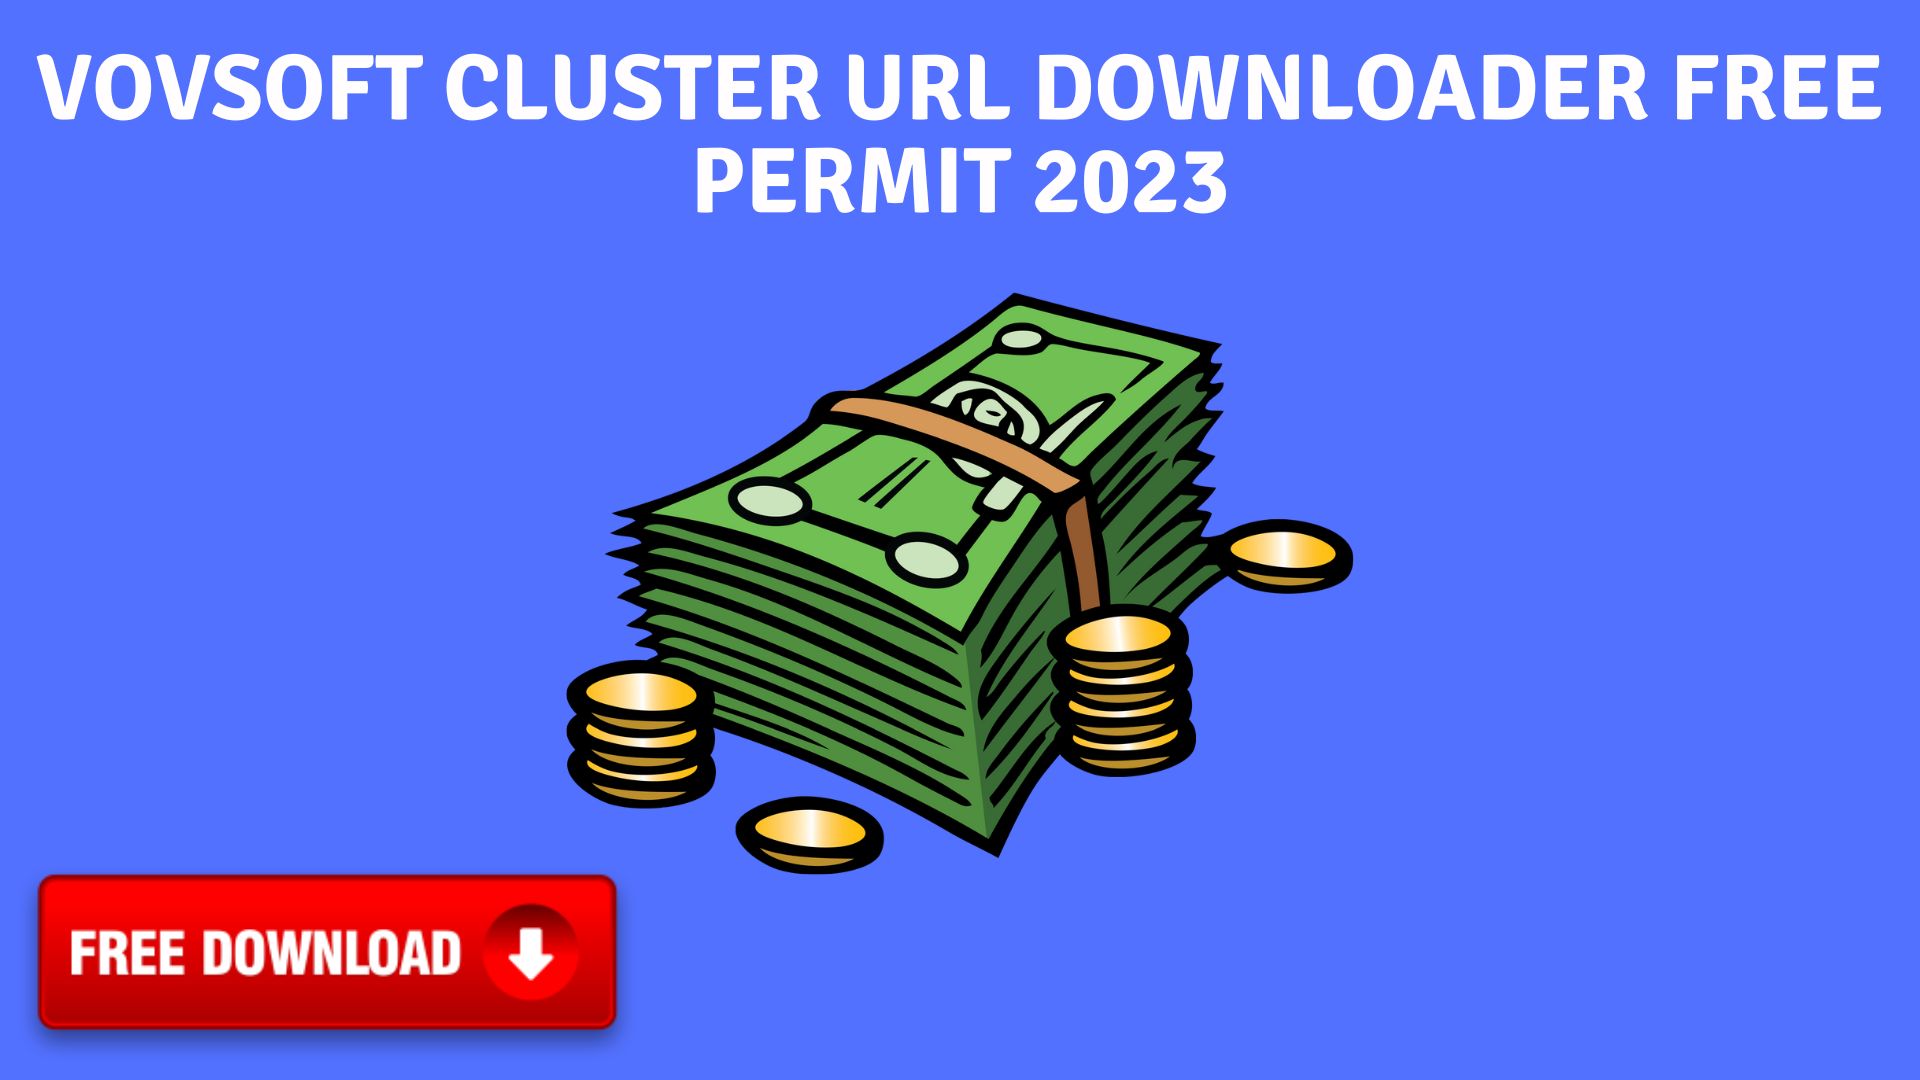 Vovsoft cluster url downloader free permit 2023